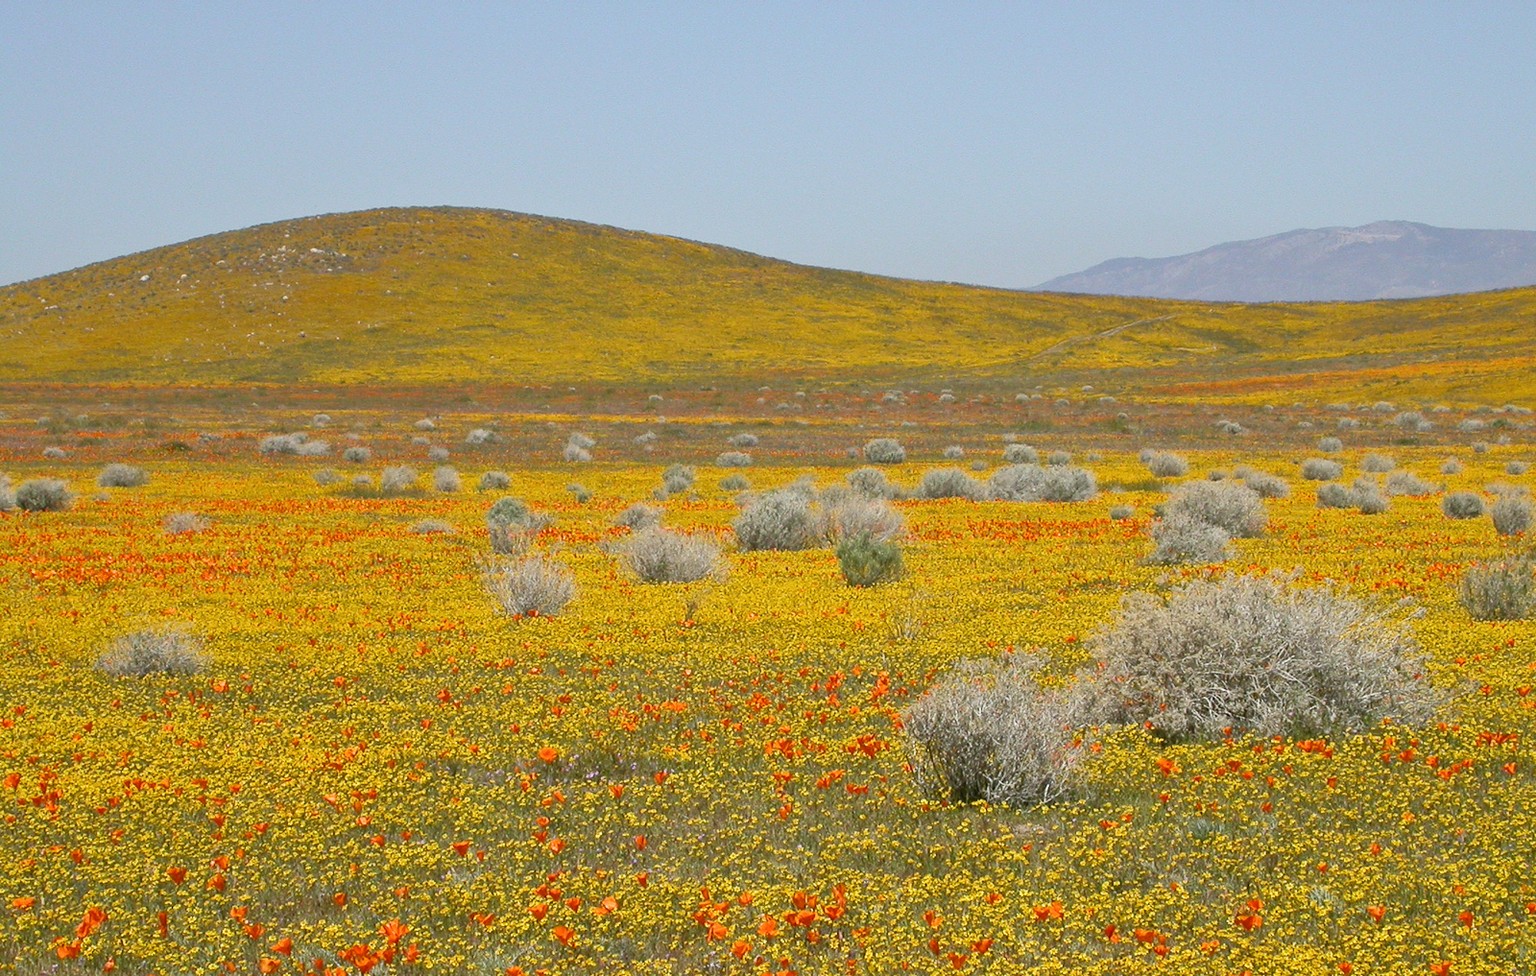 Die gelben Blümchen im Antilopen-Tal sind Goldfields, die orangen Kalifornischer Mohn.